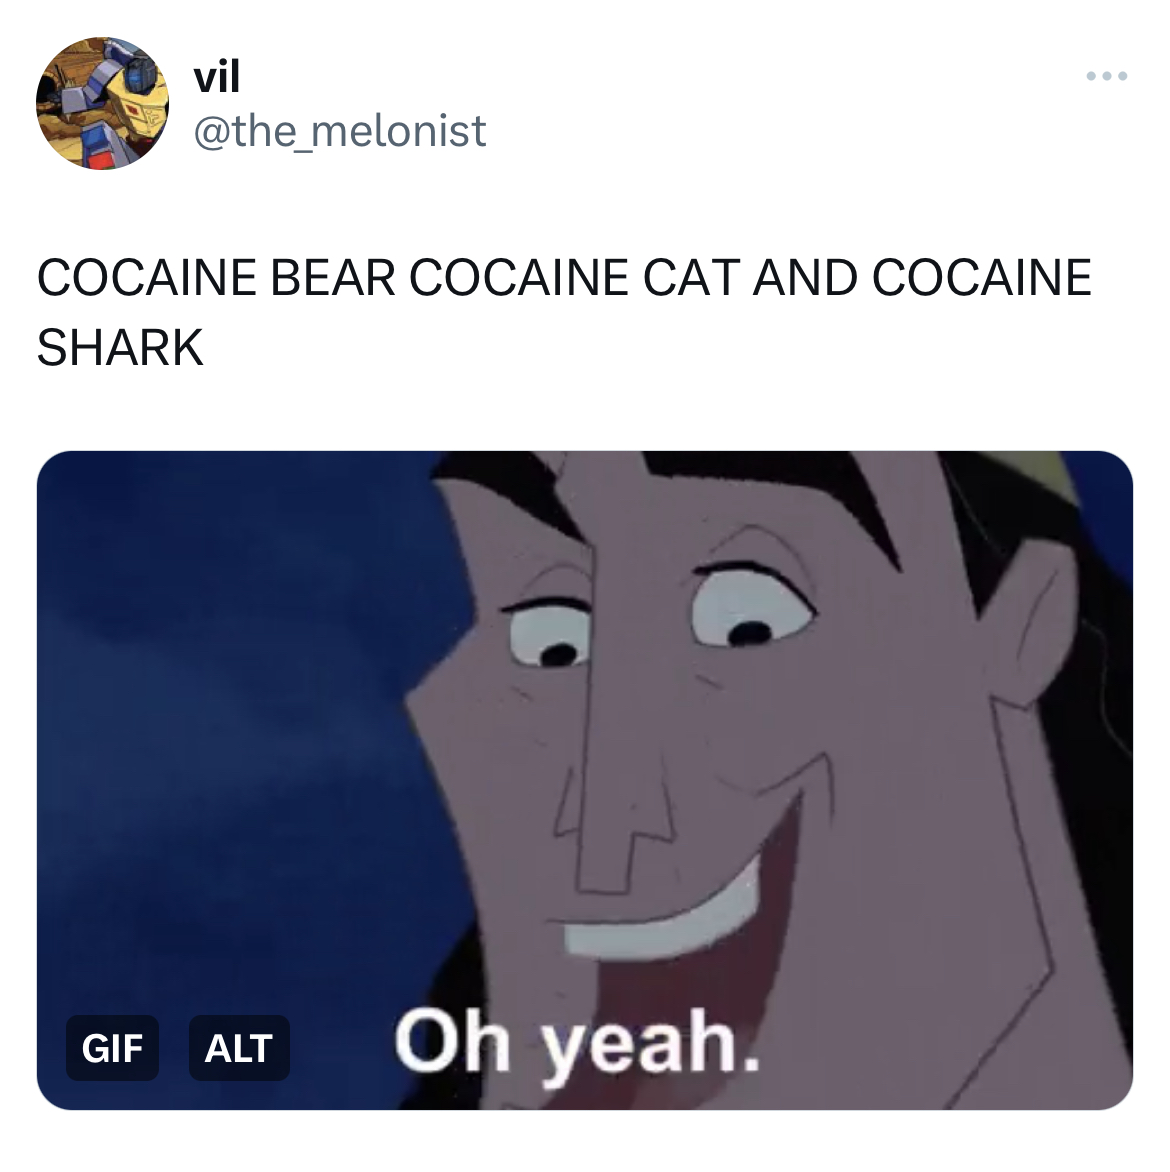 Ohio Cocaine Cat memes - cartoon - vil Cocaine Bear Cocaine Cat And Cocaine Shark Gif Alt Oh yeah.